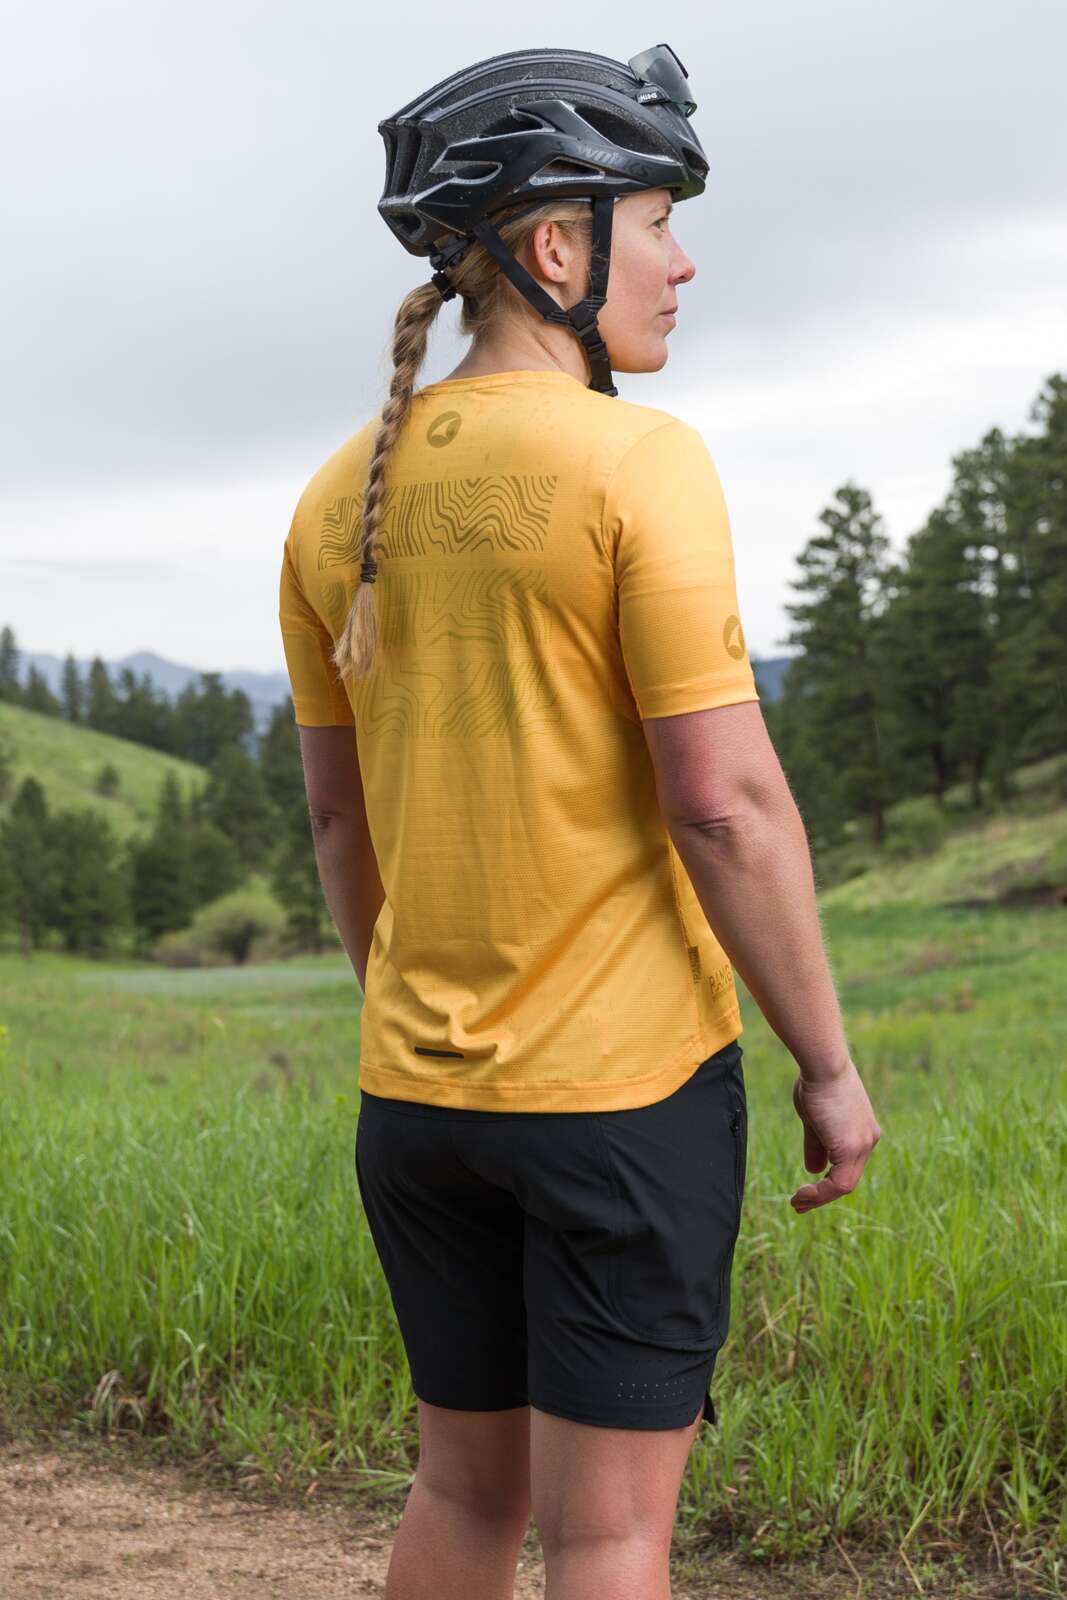 Women's Range Trail Lite Shorts